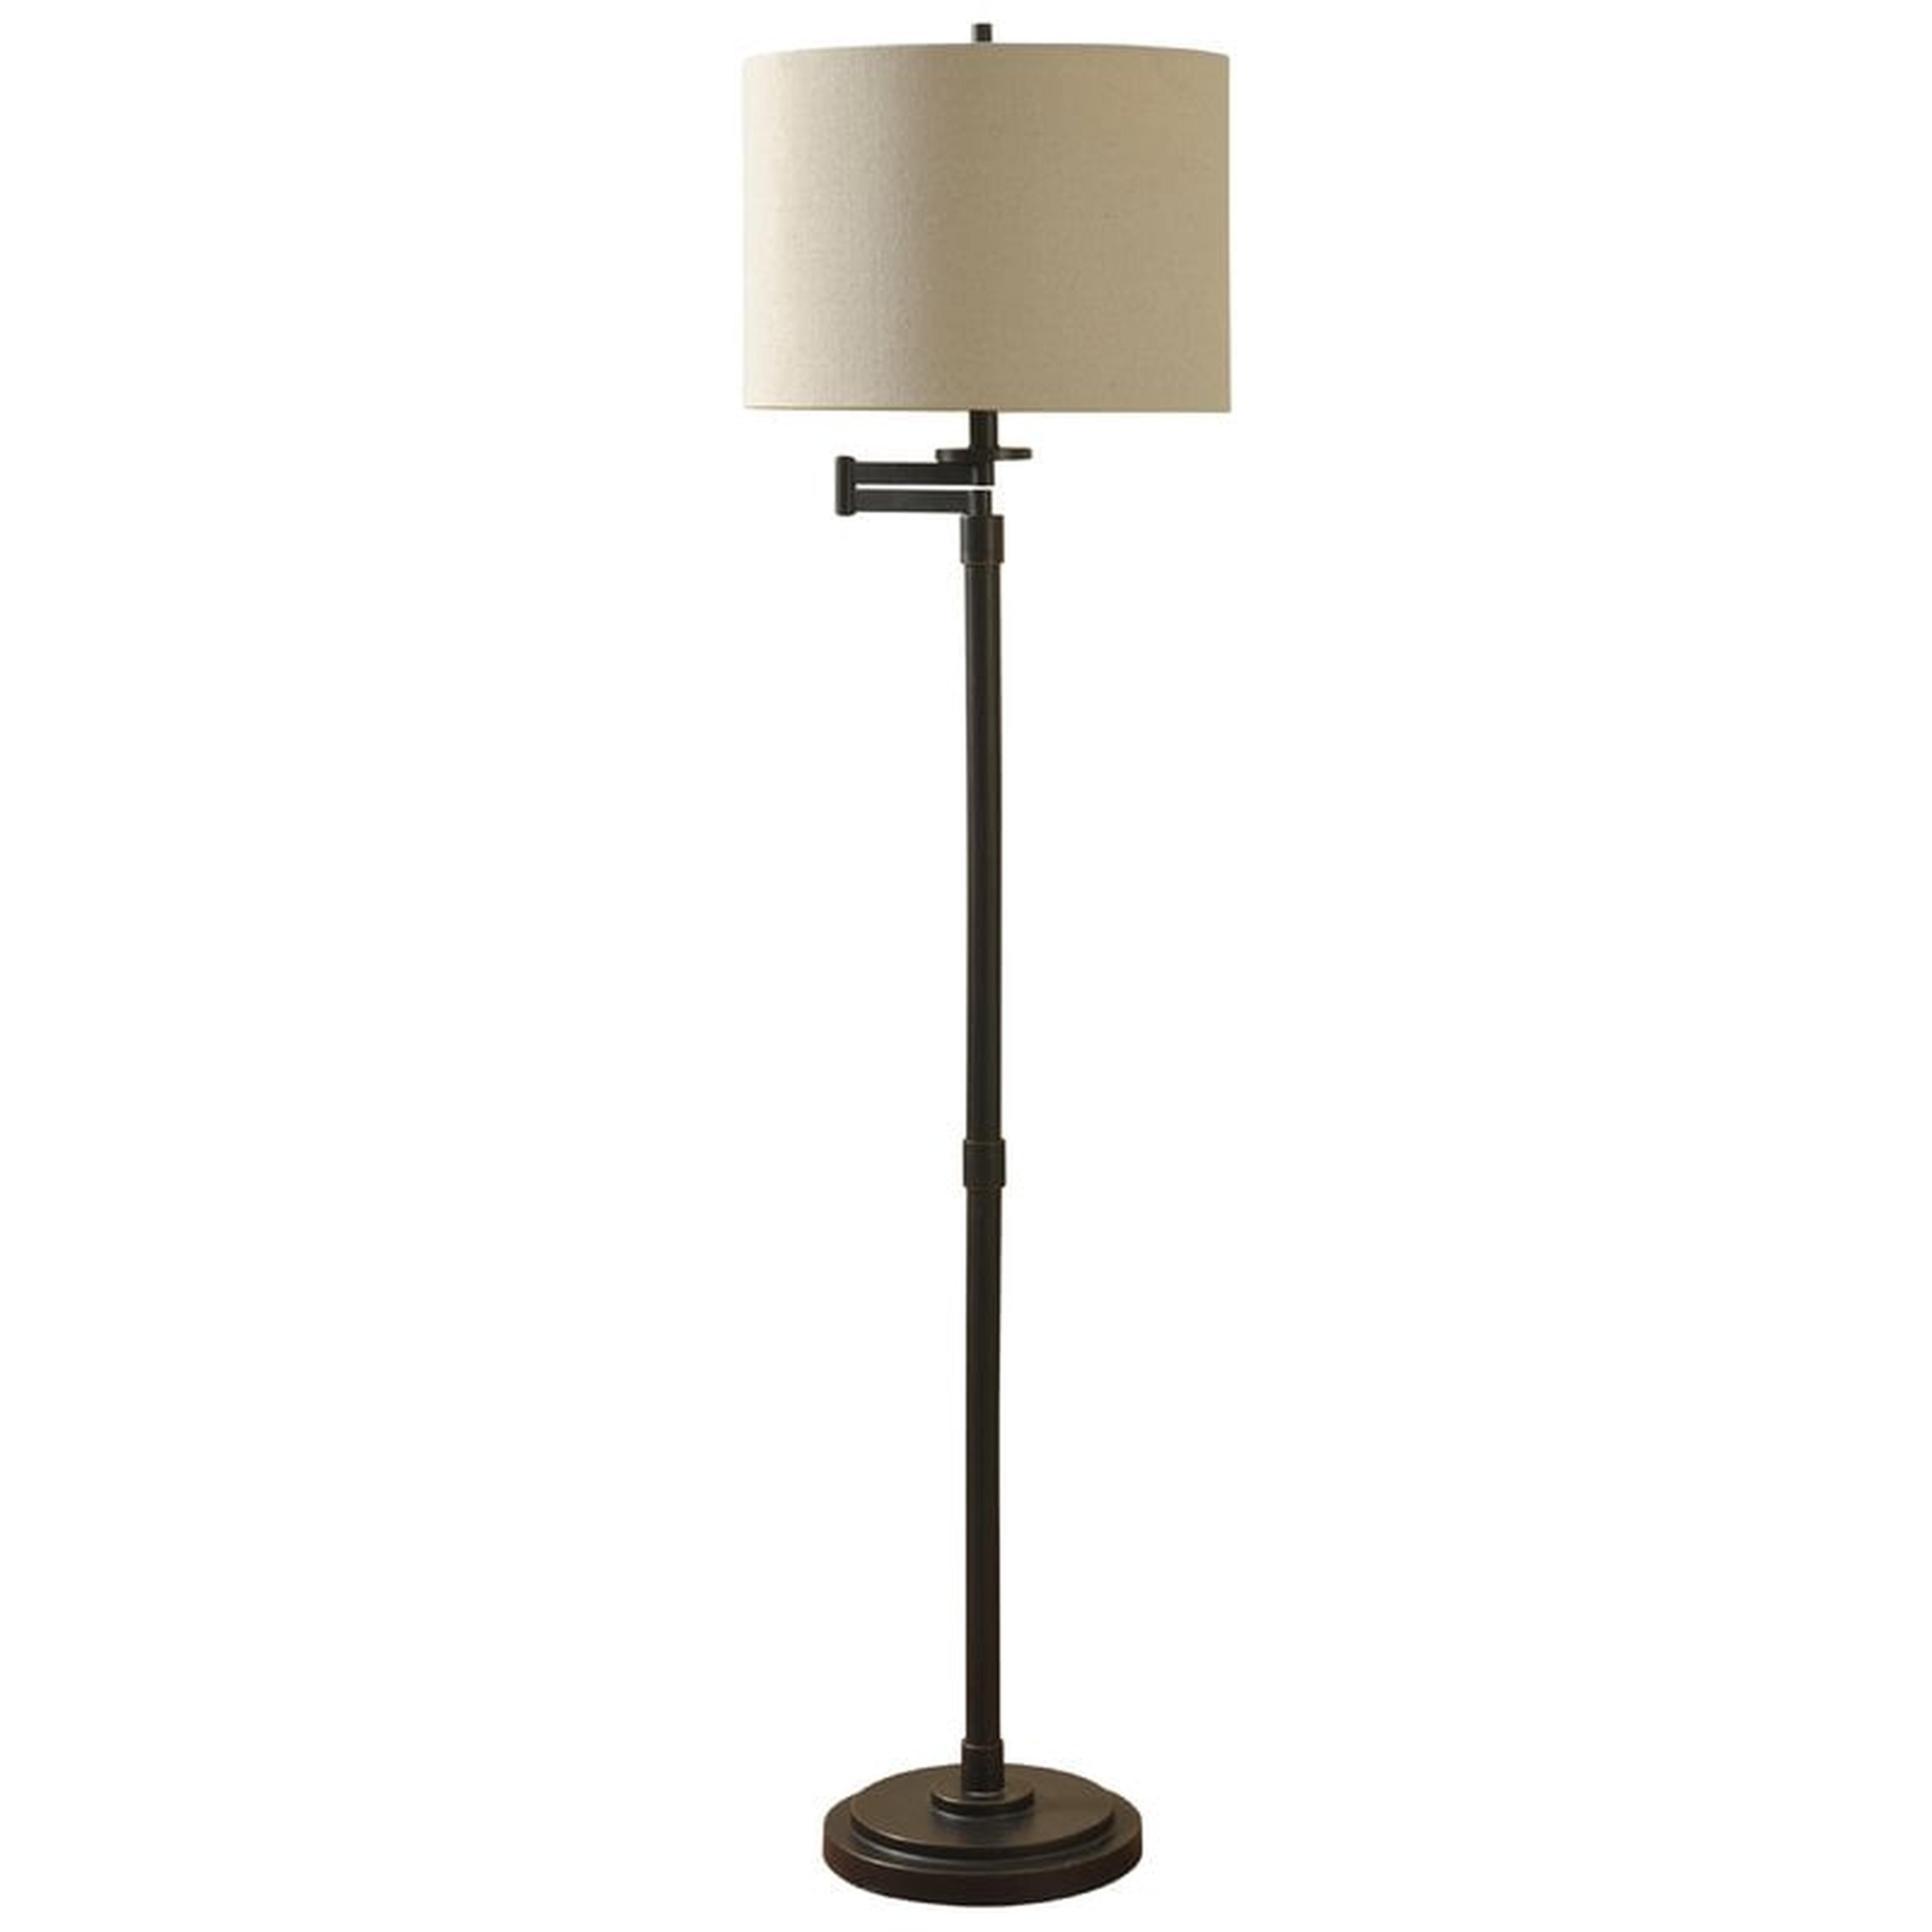 Sefton 62" Swing Arm Floor Lamp, Bronze - Wayfair